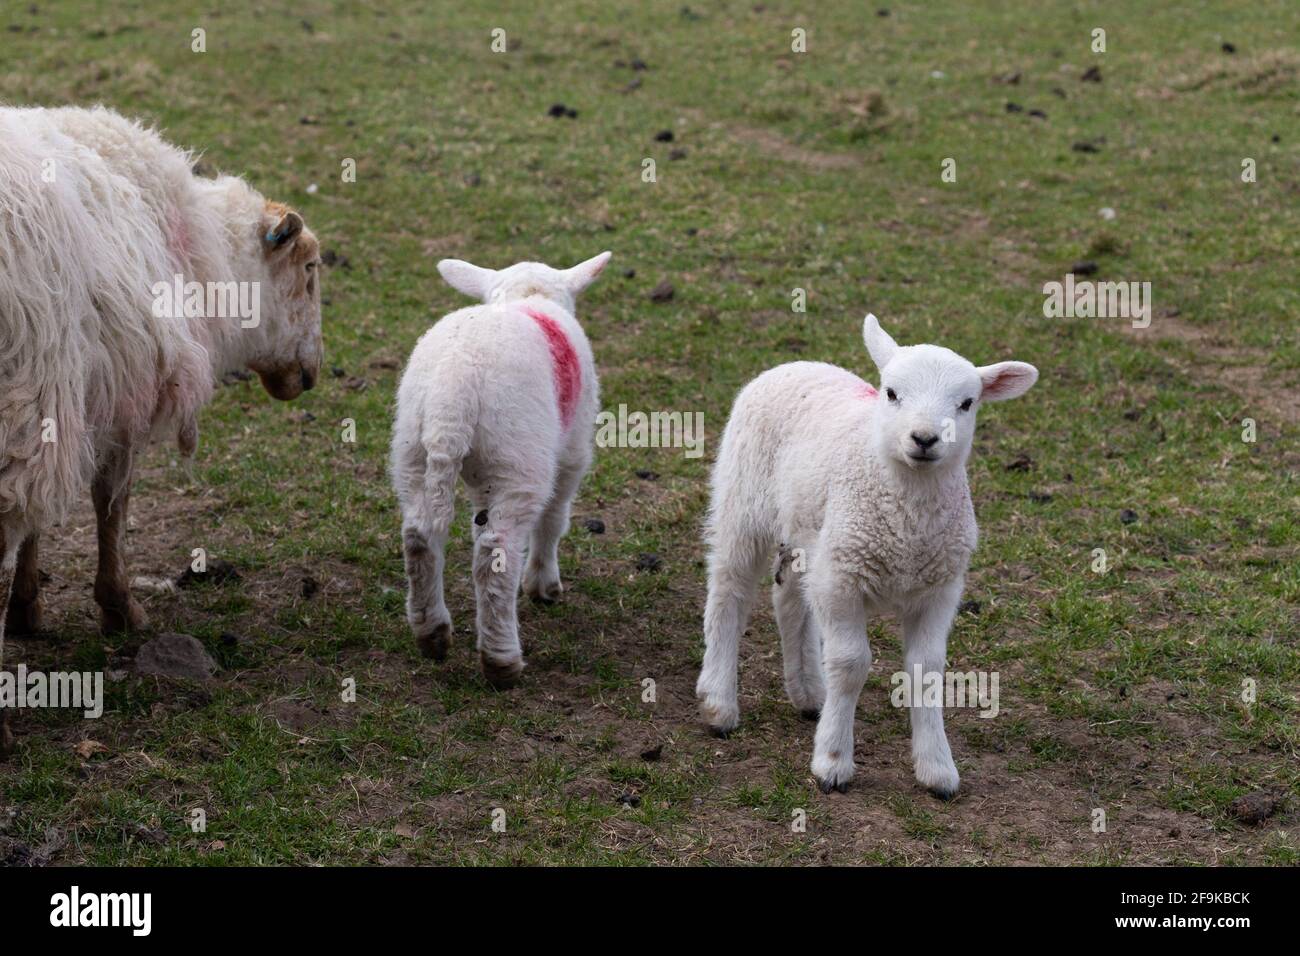 Un paio di agnelli con la madre in un campo nello Yorkshire. Gli agnelli sono marcati smit con vernice rossa per l'identificazione. Foto Stock